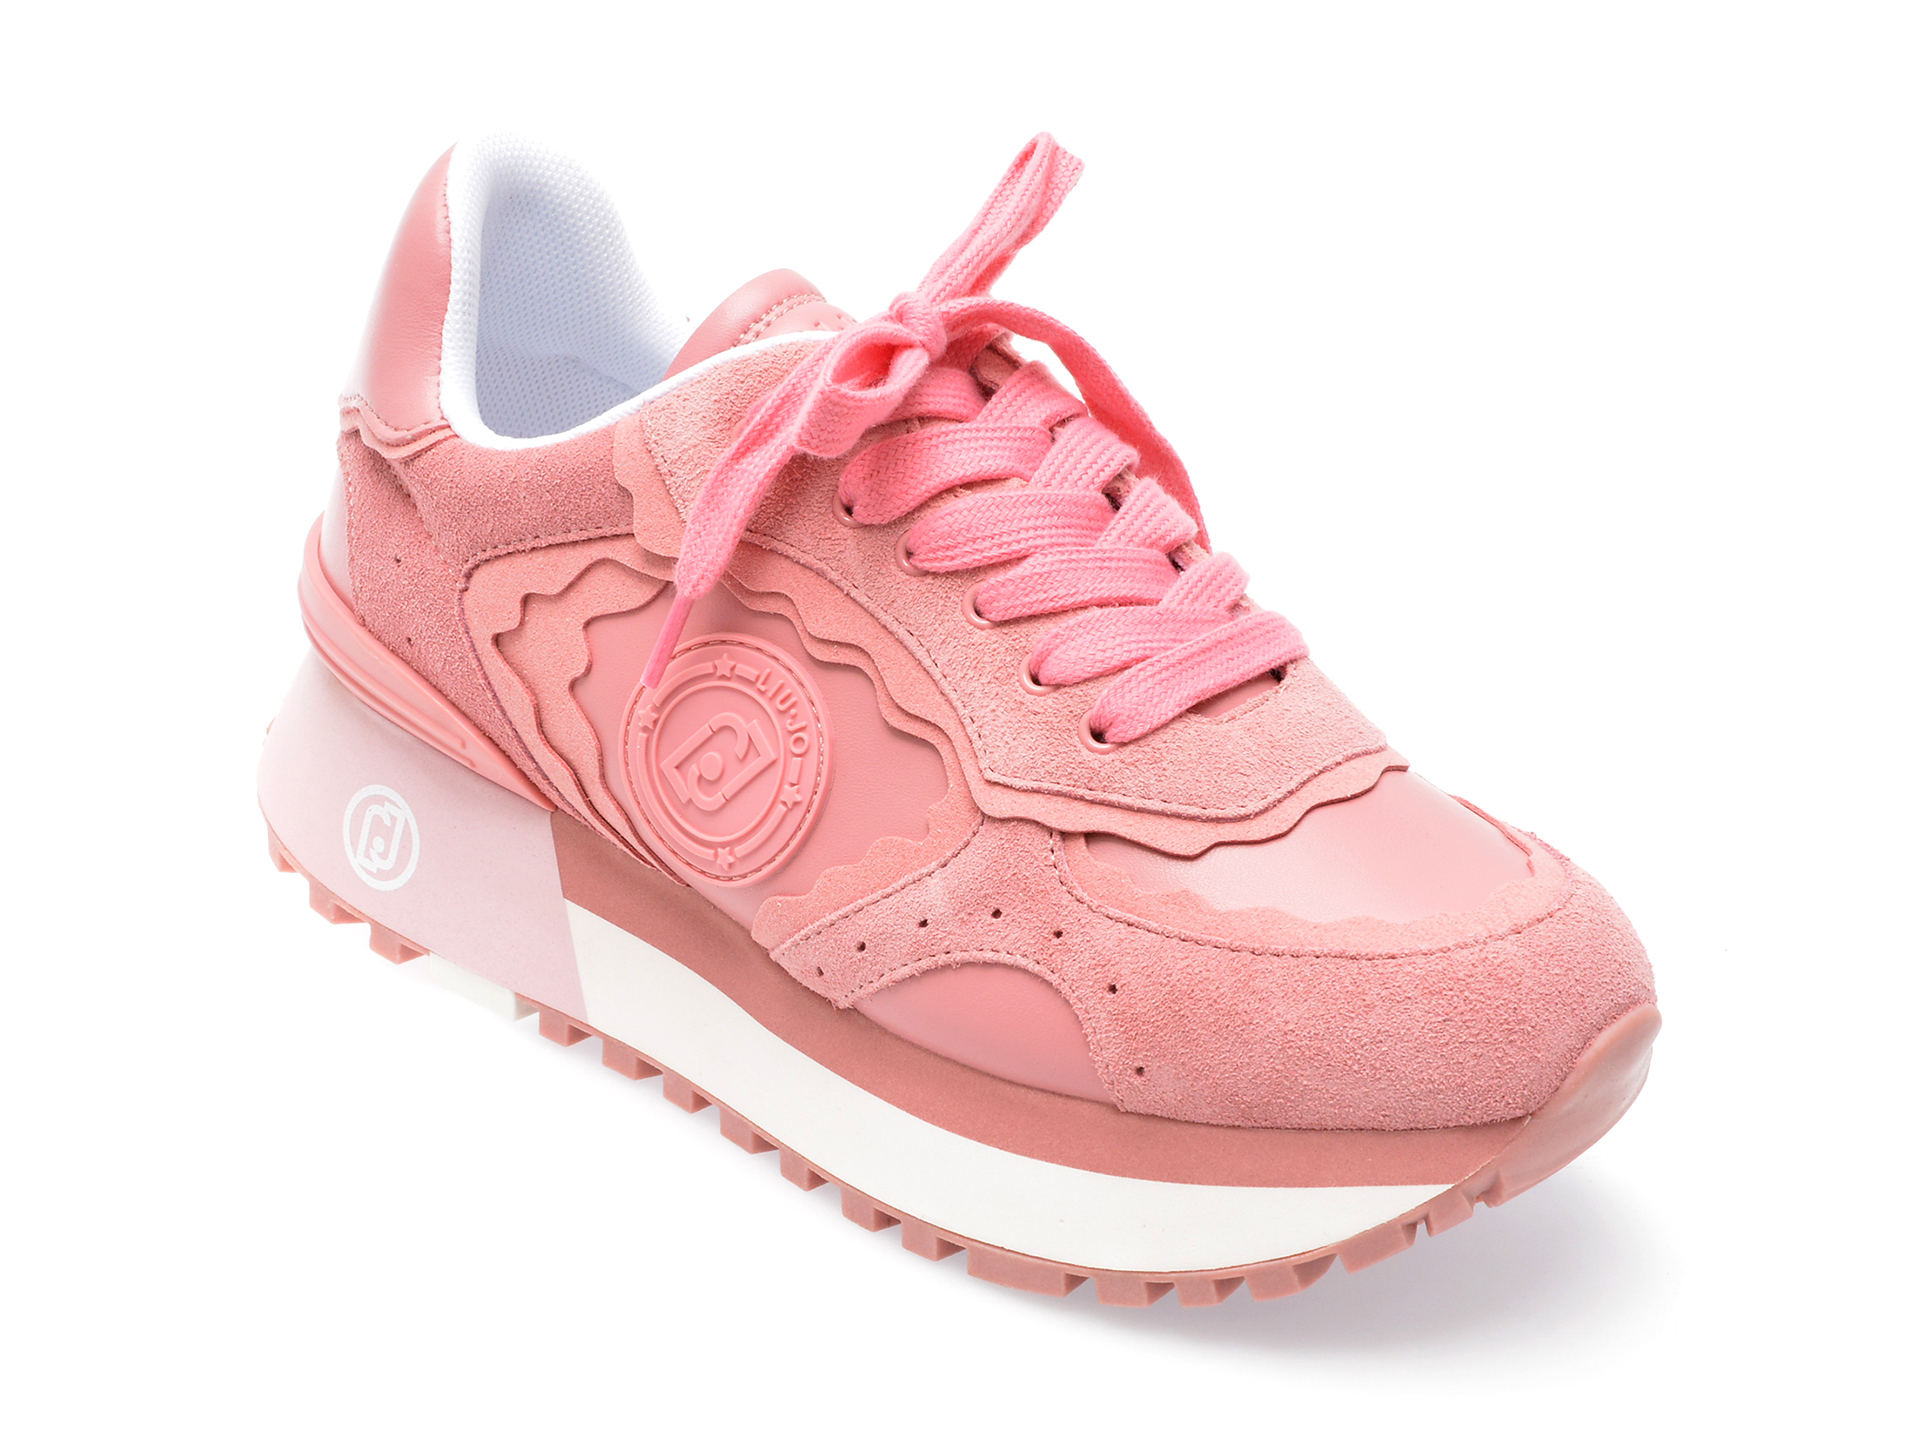 Pantofi LIU JO roz, MAXWO60, din piele ecologica